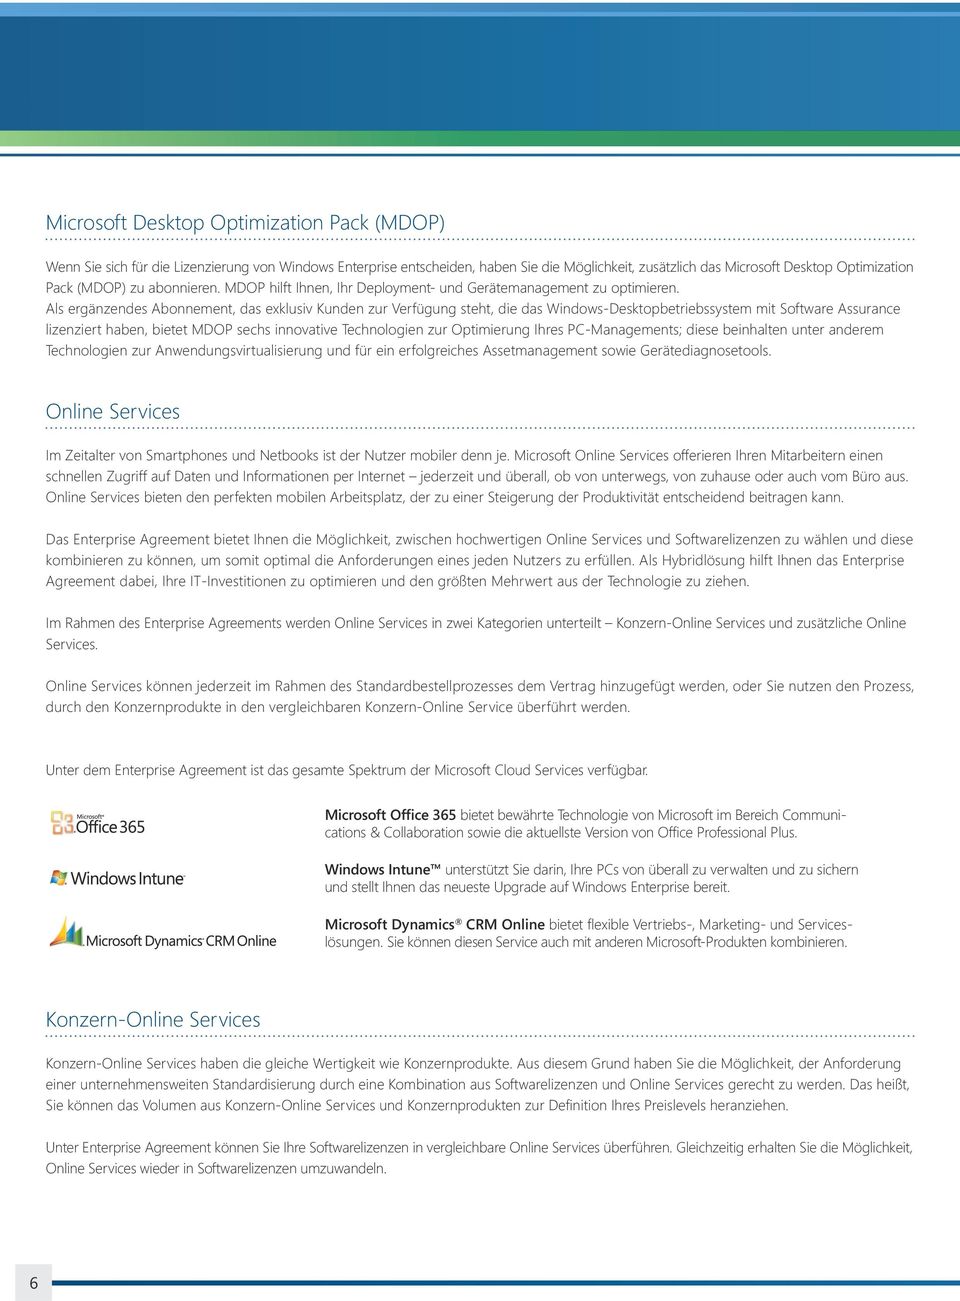 Als ergänzendes Abonnement, das exklusiv Kunden zur Verfügung steht, die das Windows-Desktopbetriebssystem mit Software Assurance lizenziert haben, bietet MDOP sechs innovative Technologien zur